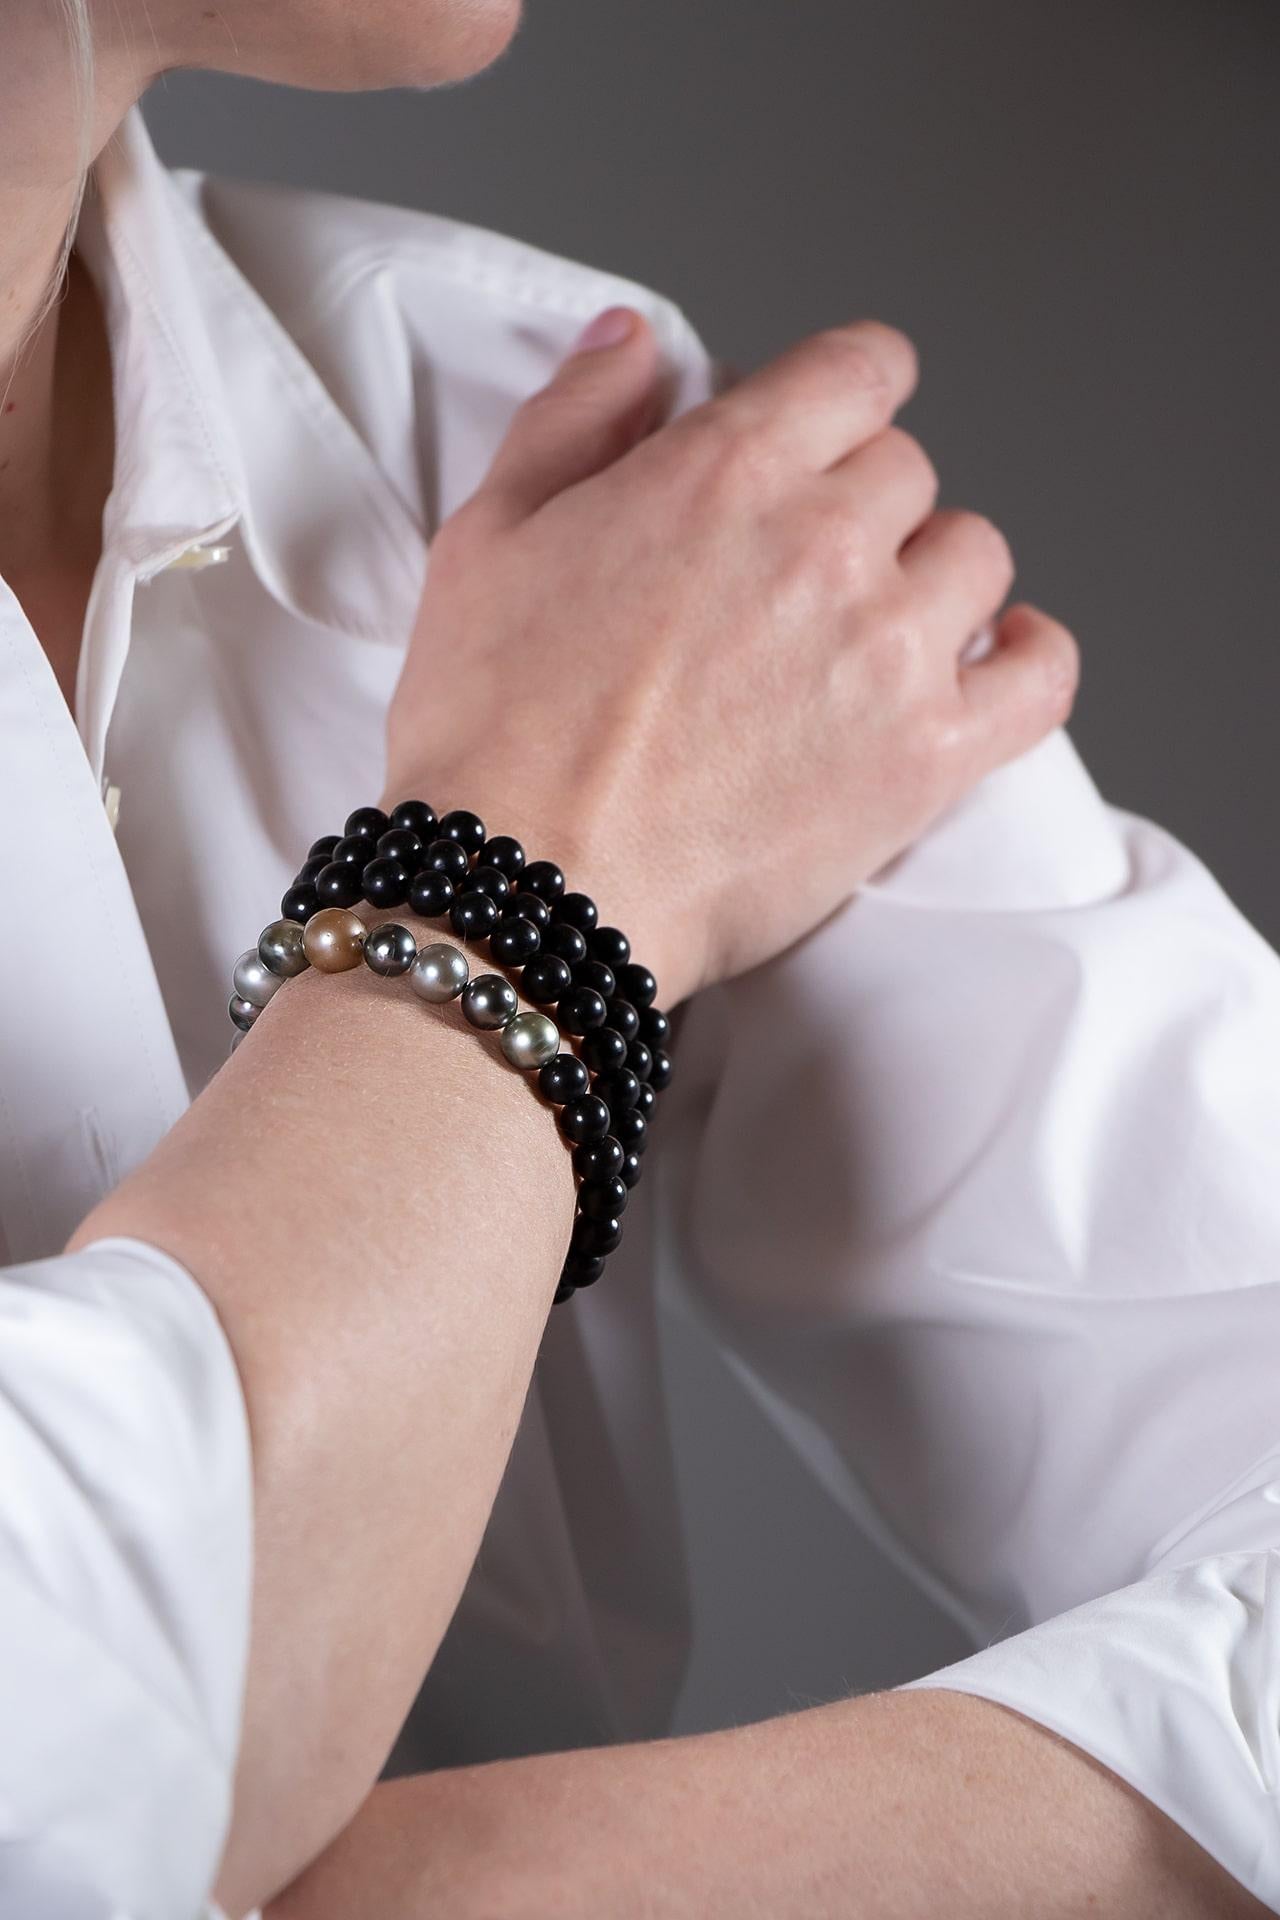 Ce bijou s'inspire des colliers de prière bouddhistes. Il peut être porté en collier ou enroulé autour du poignet. Il est captivant avec ses intrigantes perles de Tahiti naturellement colorées. 
Un bijou à la fois élégant et simple.
Les perles